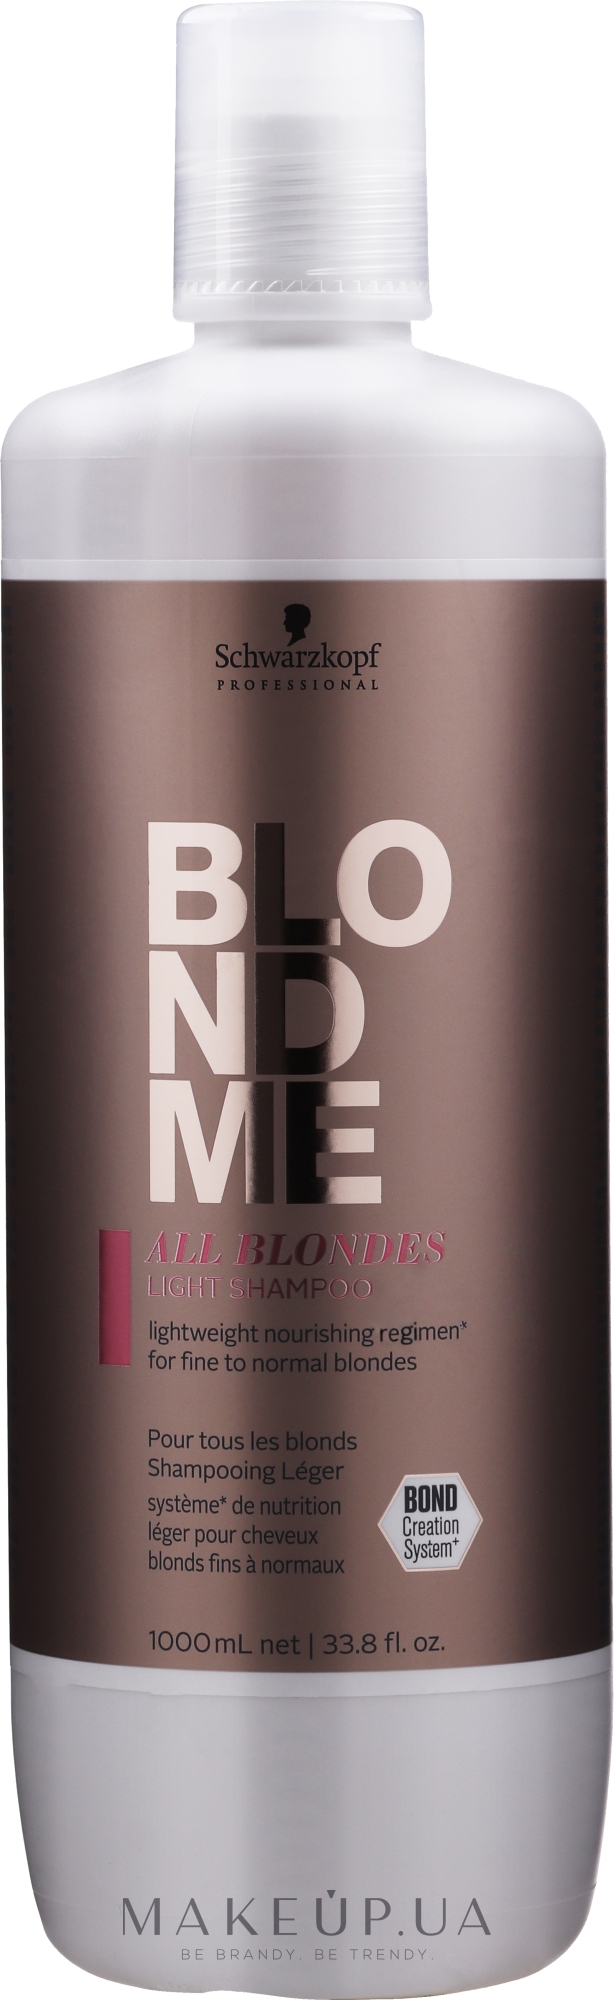 Шампунь для тонкого волосся усіх типів блонд - Schwarzkopf Professional Blondme All Blondes Light Shampoo — фото 1000ml